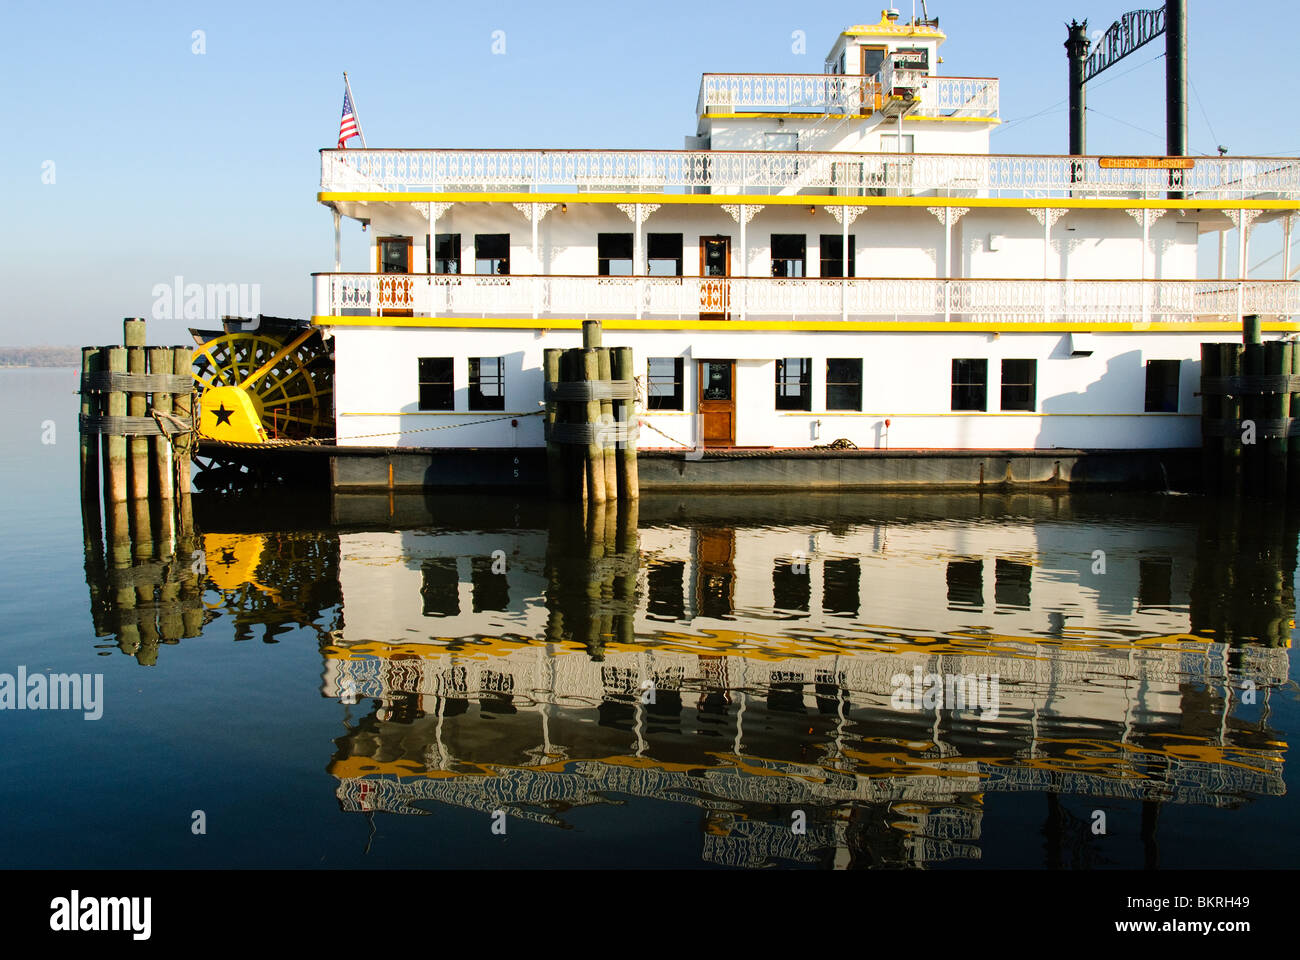 ALEXANDRIA, Virginia - roue à aubes historique le bateau Fleur de cerisier amarré au port de plaisance dans la vieille ville d'Alexandria Banque D'Images